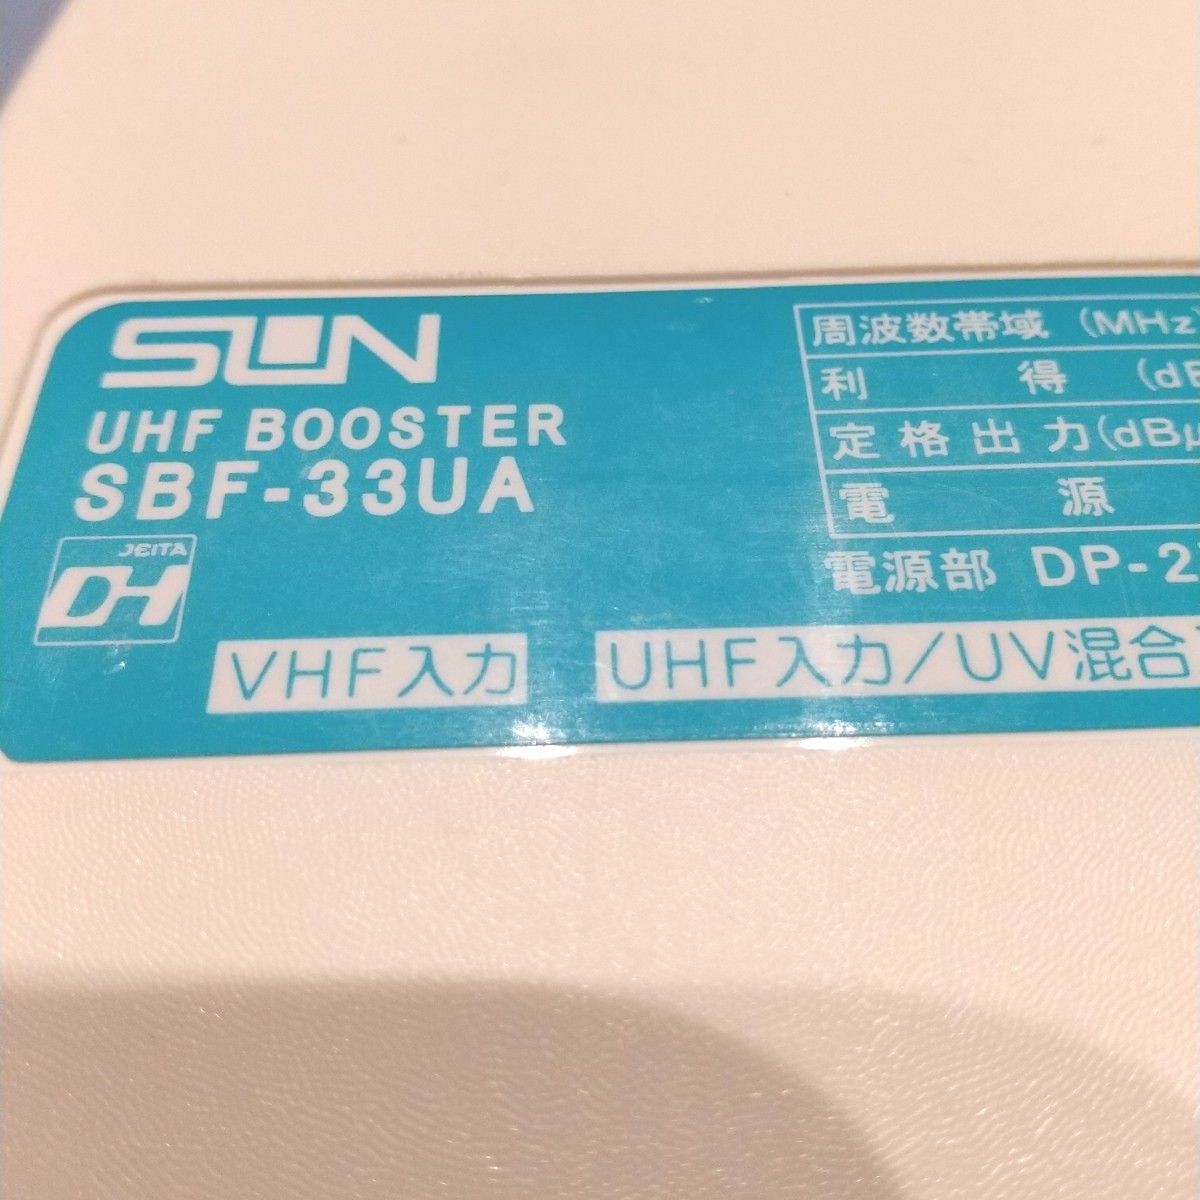 サン電子 UHF VHF 混合 ブースター SBF-33UA